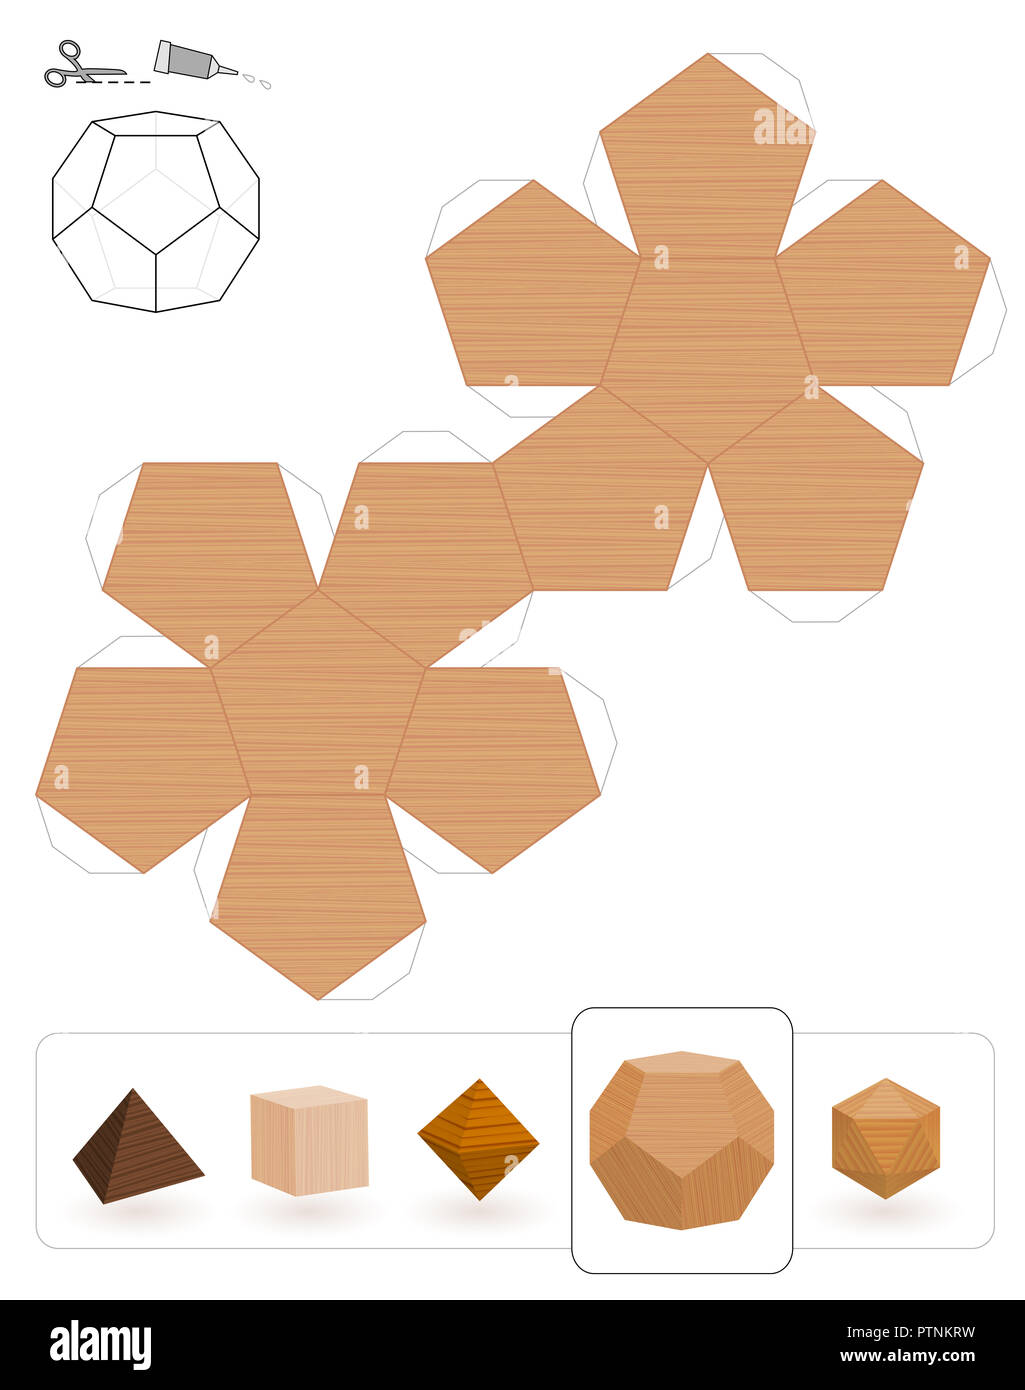 Solides de Platon. Modèle d'un dodécaèdre avec texture en bois pour faire un modèle 3D hors du triangle net. Banque D'Images